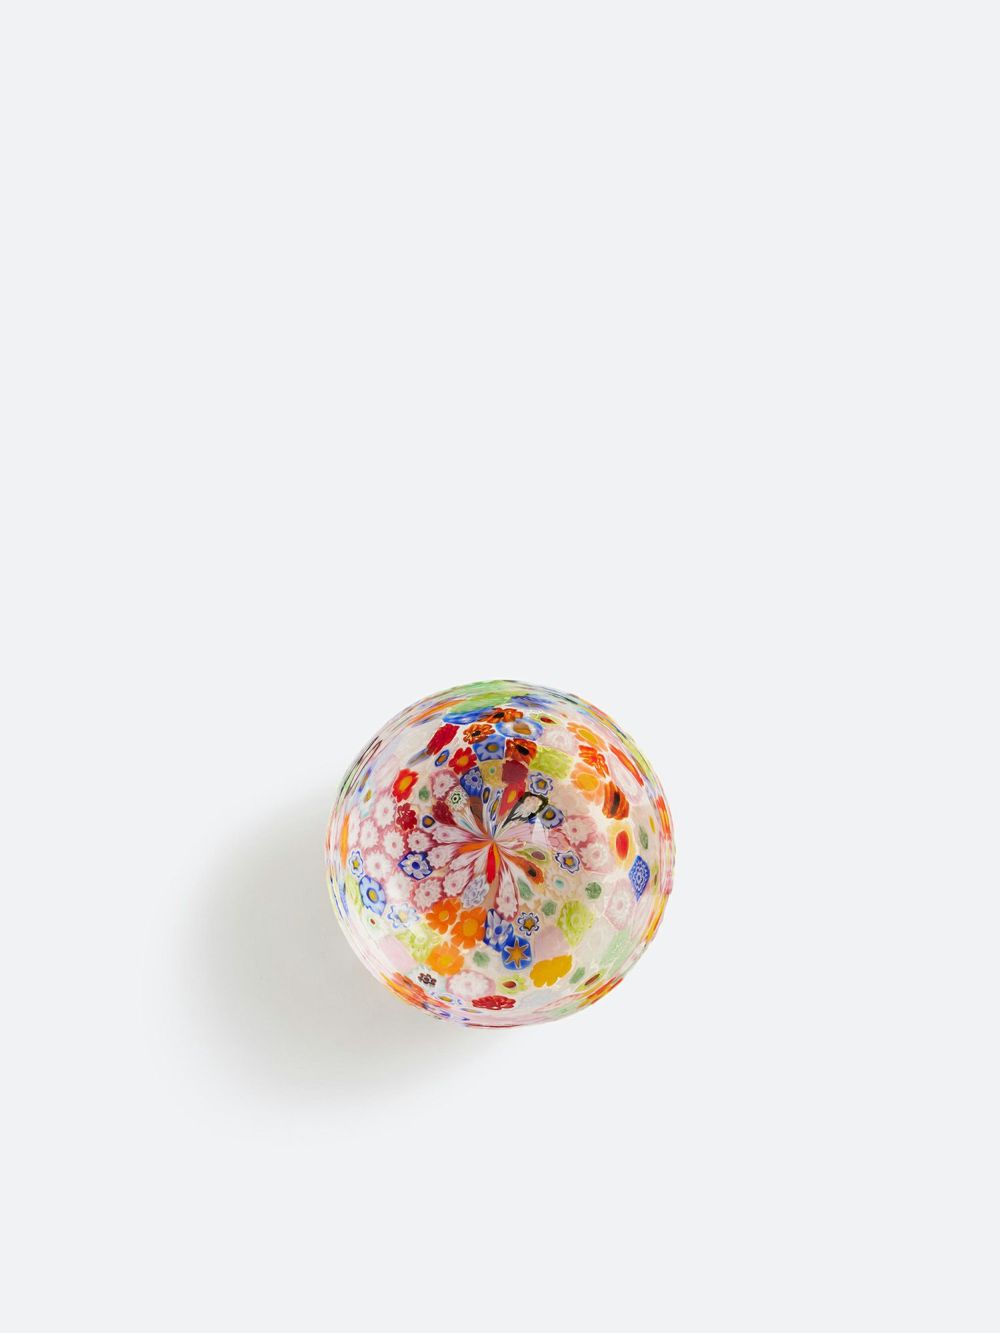 ベネチアガラス 小鉢「ひみつの花園」 |ガラス器 | WAKOオンライン 